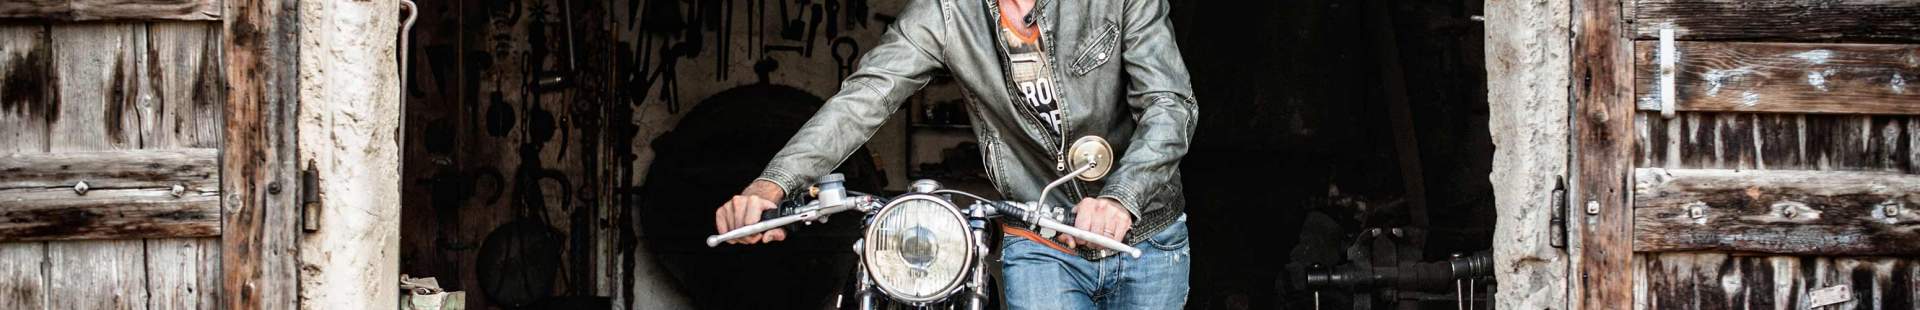 Mann schiebt Motorrad aus Garage